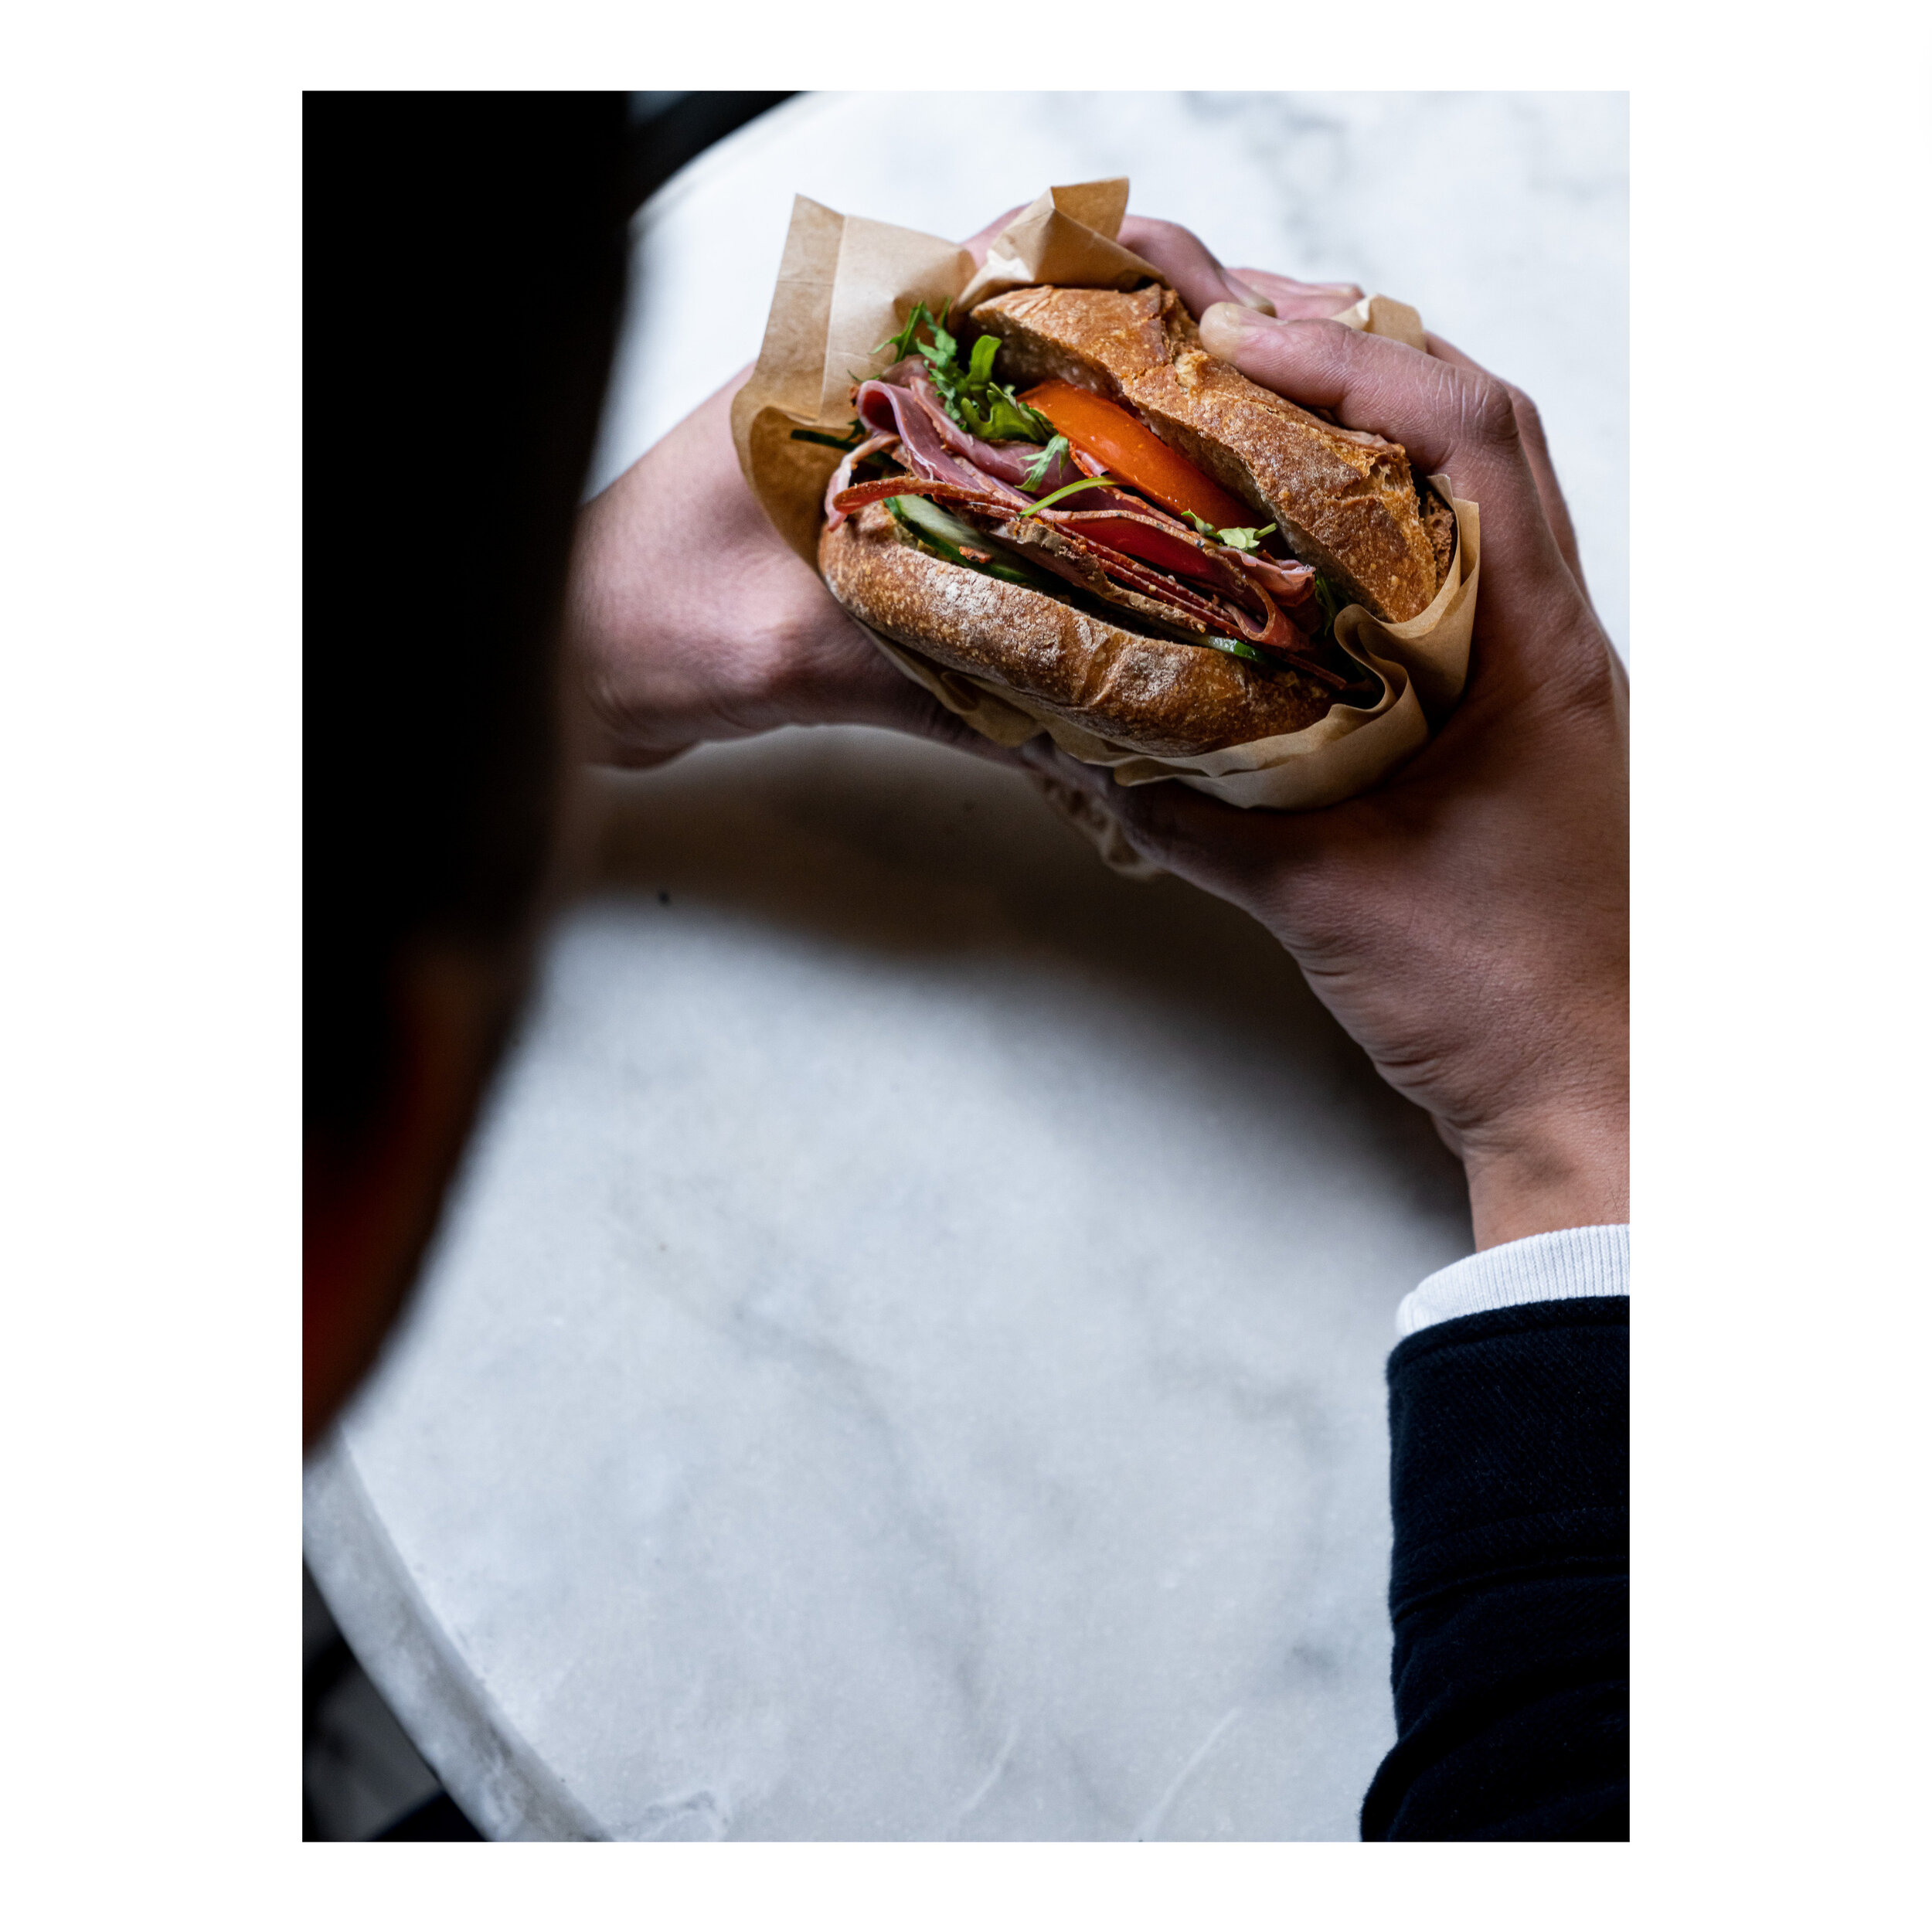 Gigi le pastrami fait son beau ;⁣
pain semi-complet imbib&eacute; &agrave; l'eau de tomate - pastrami k⁣
- champignons de paris - sweet moutarde maison - roquette - tomates⁣
.⁣
.⁣
.⁣
#bagnard #painbagnat #bagnat #kosherfood #sandwichesofinstagram #sa